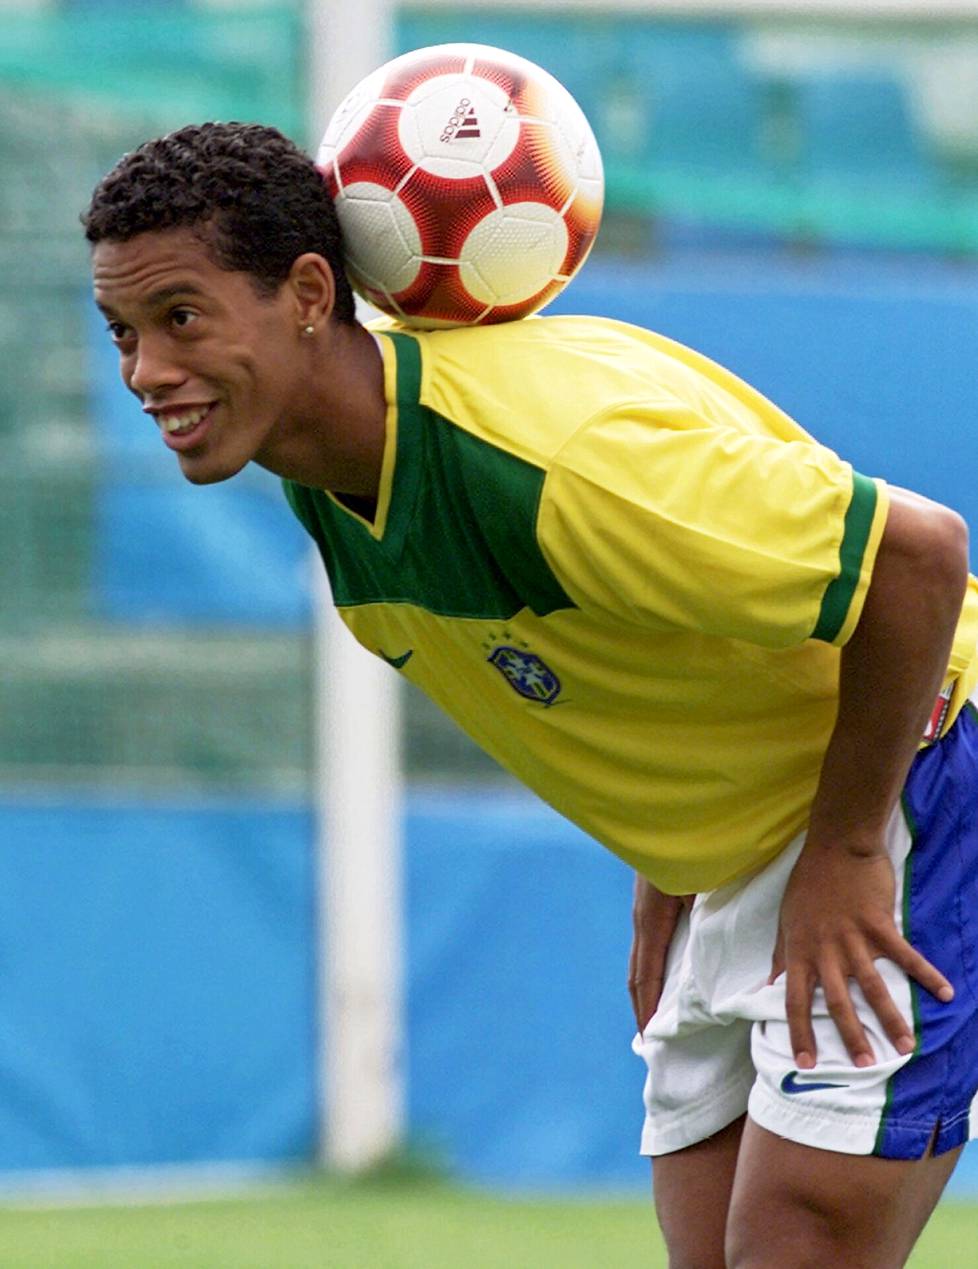 Ronaldinho siirsi futsalissa ja rantajalkapallossa harjoittelelemansa temput isolle kentälle.